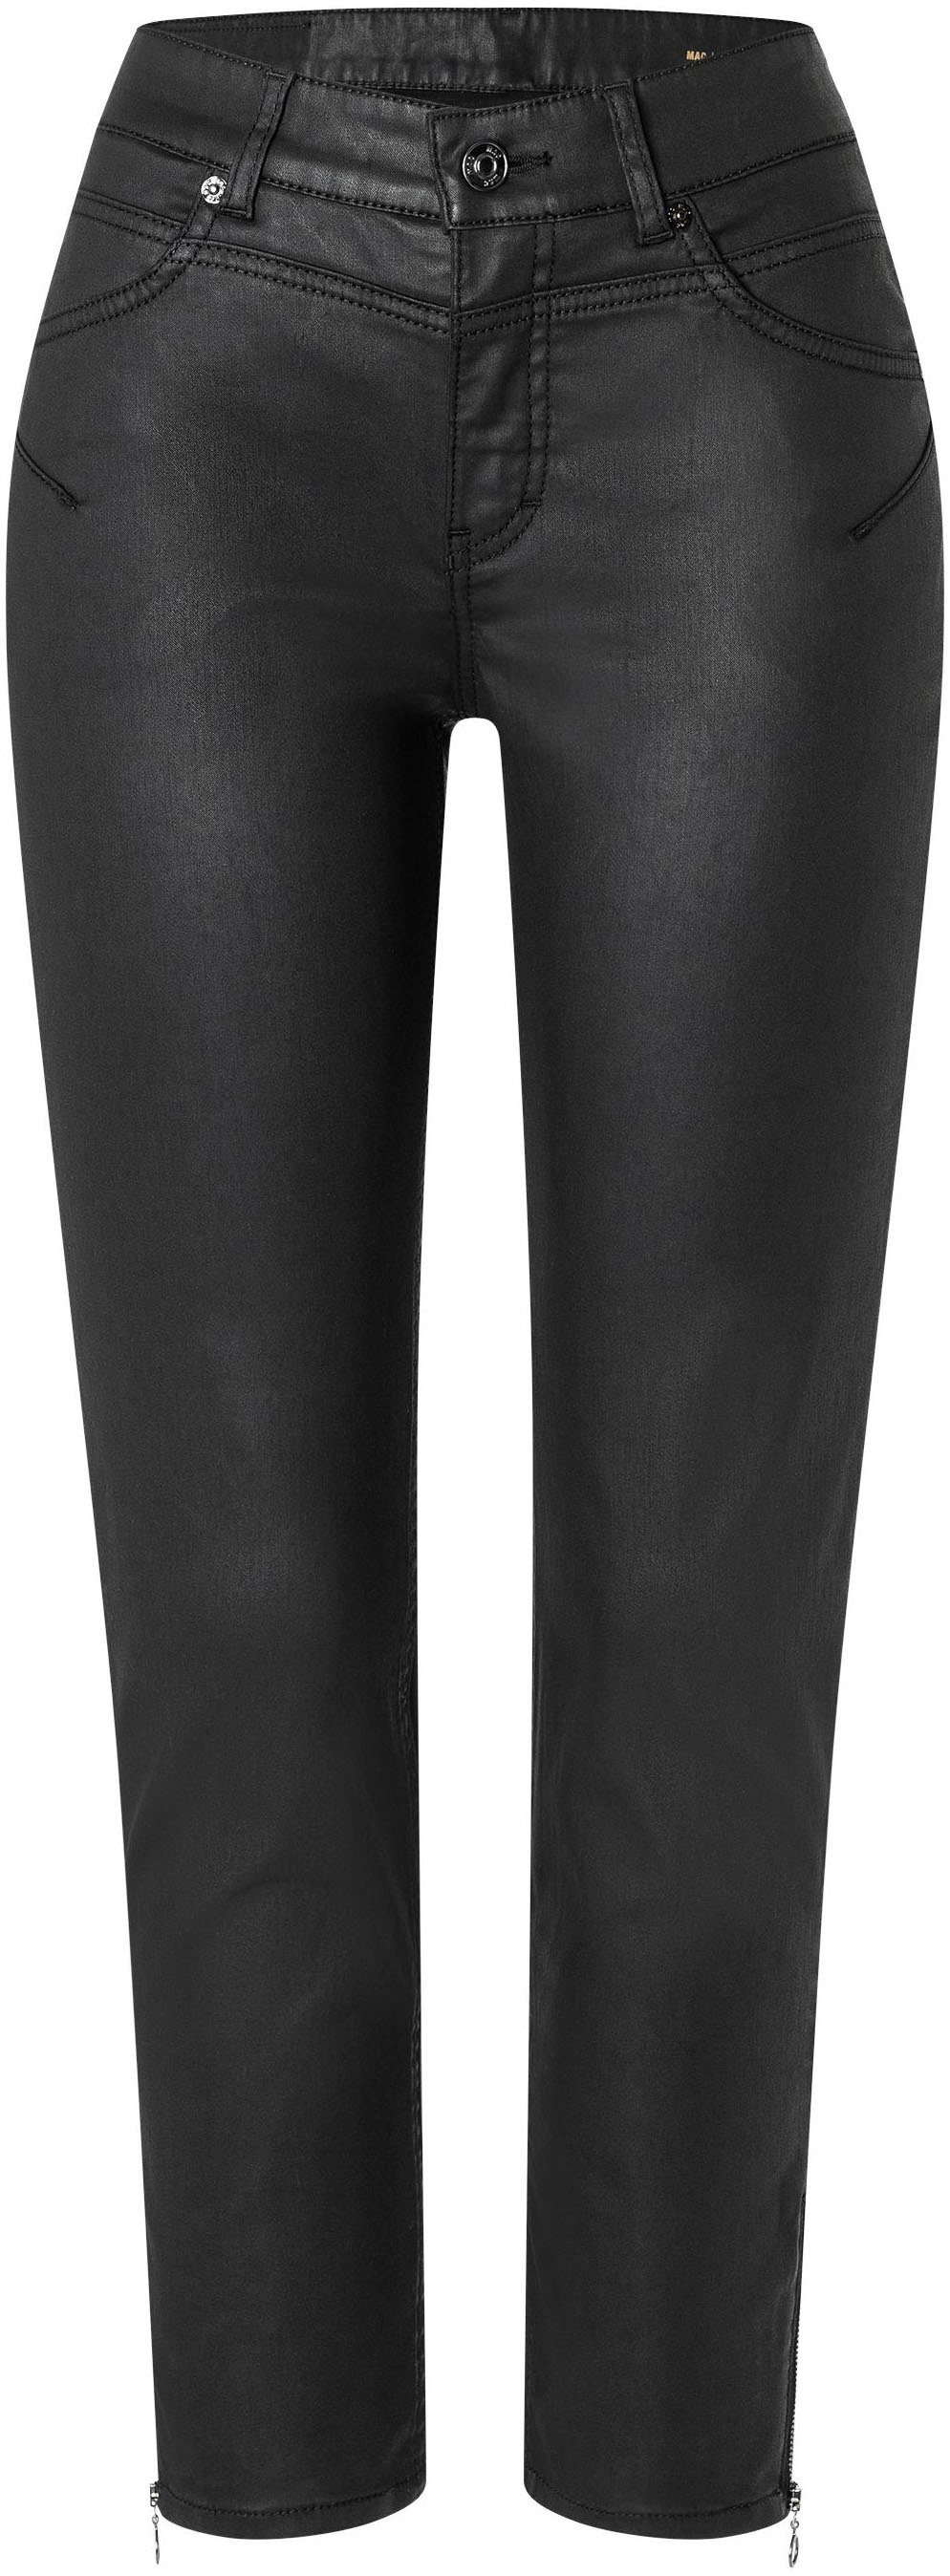 MAC Röhrenhose RICH SLIM Bein Reißverschluss-Detail mit coating am chic black